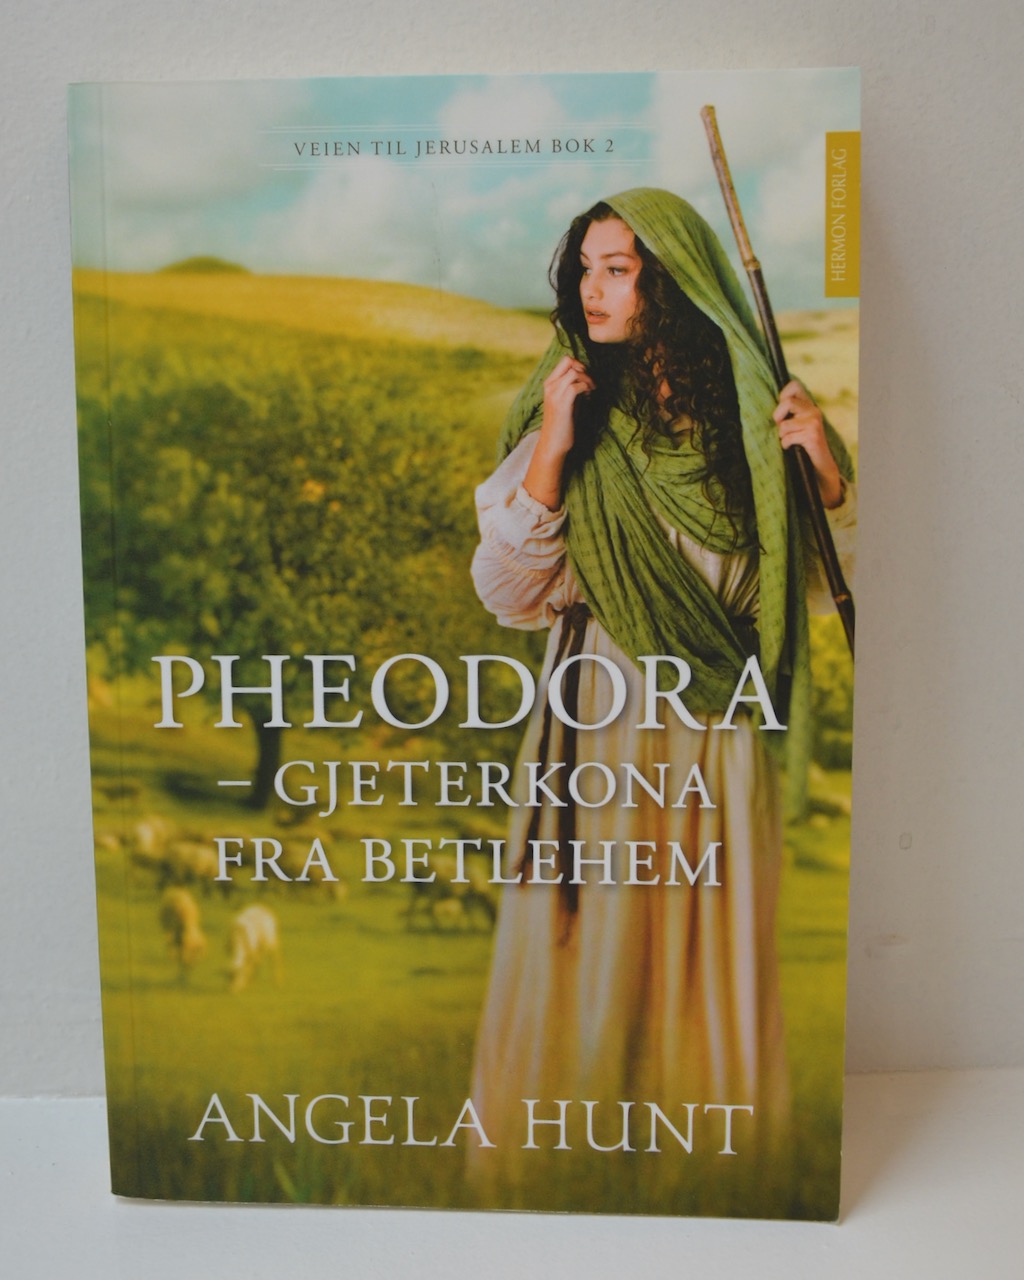 Pheodora - gjeterkona fra Betlehem